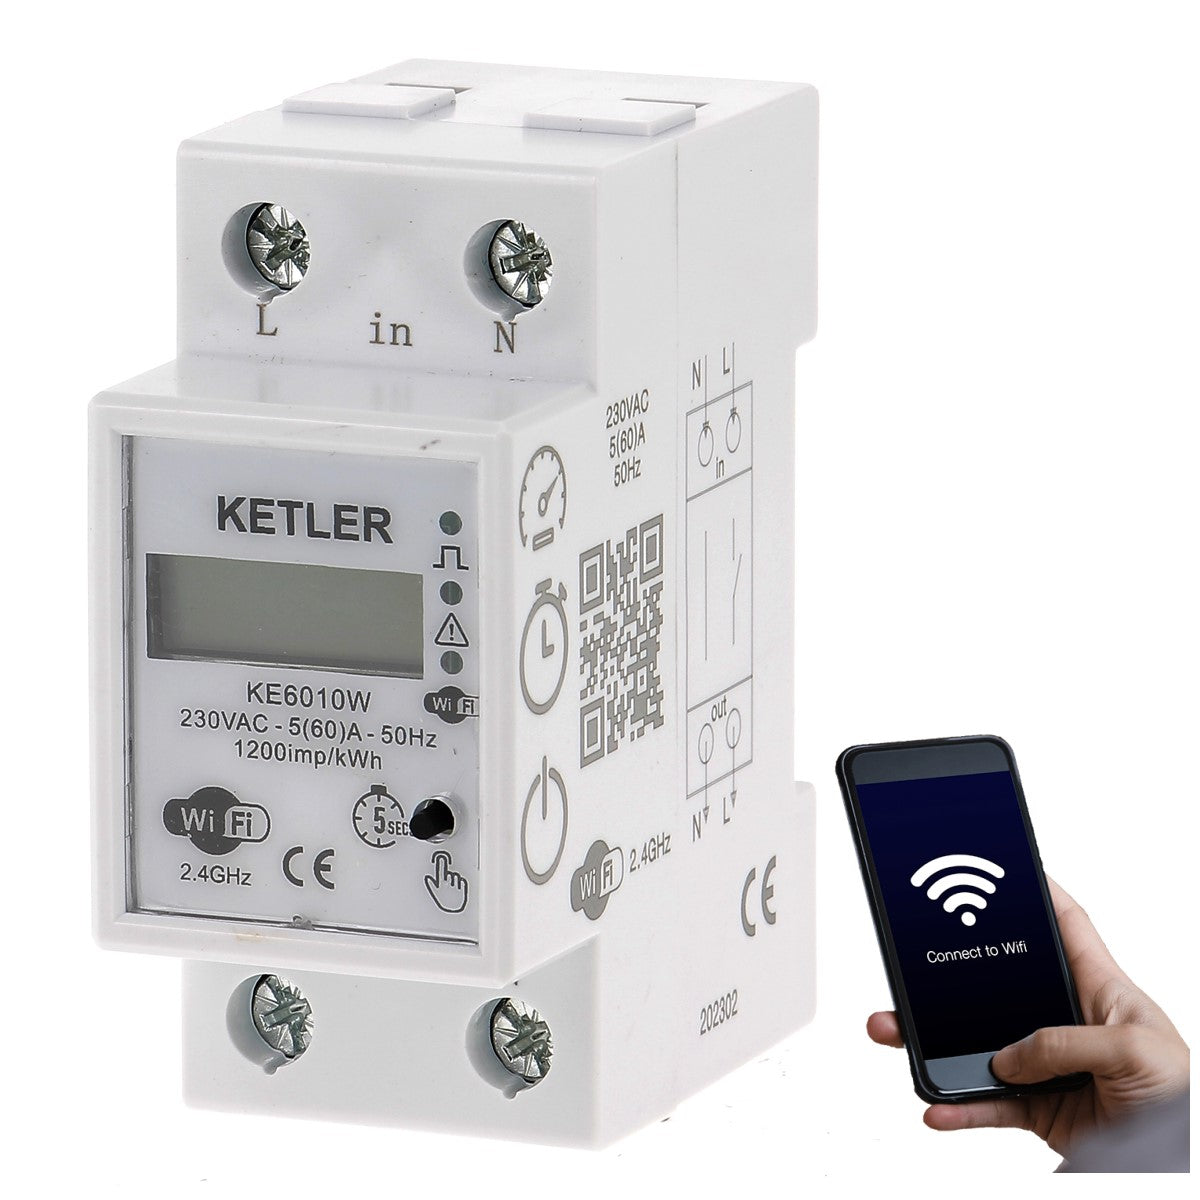 KETLER - KE6010W : Compteur contacteur électrique modulaire KETLER